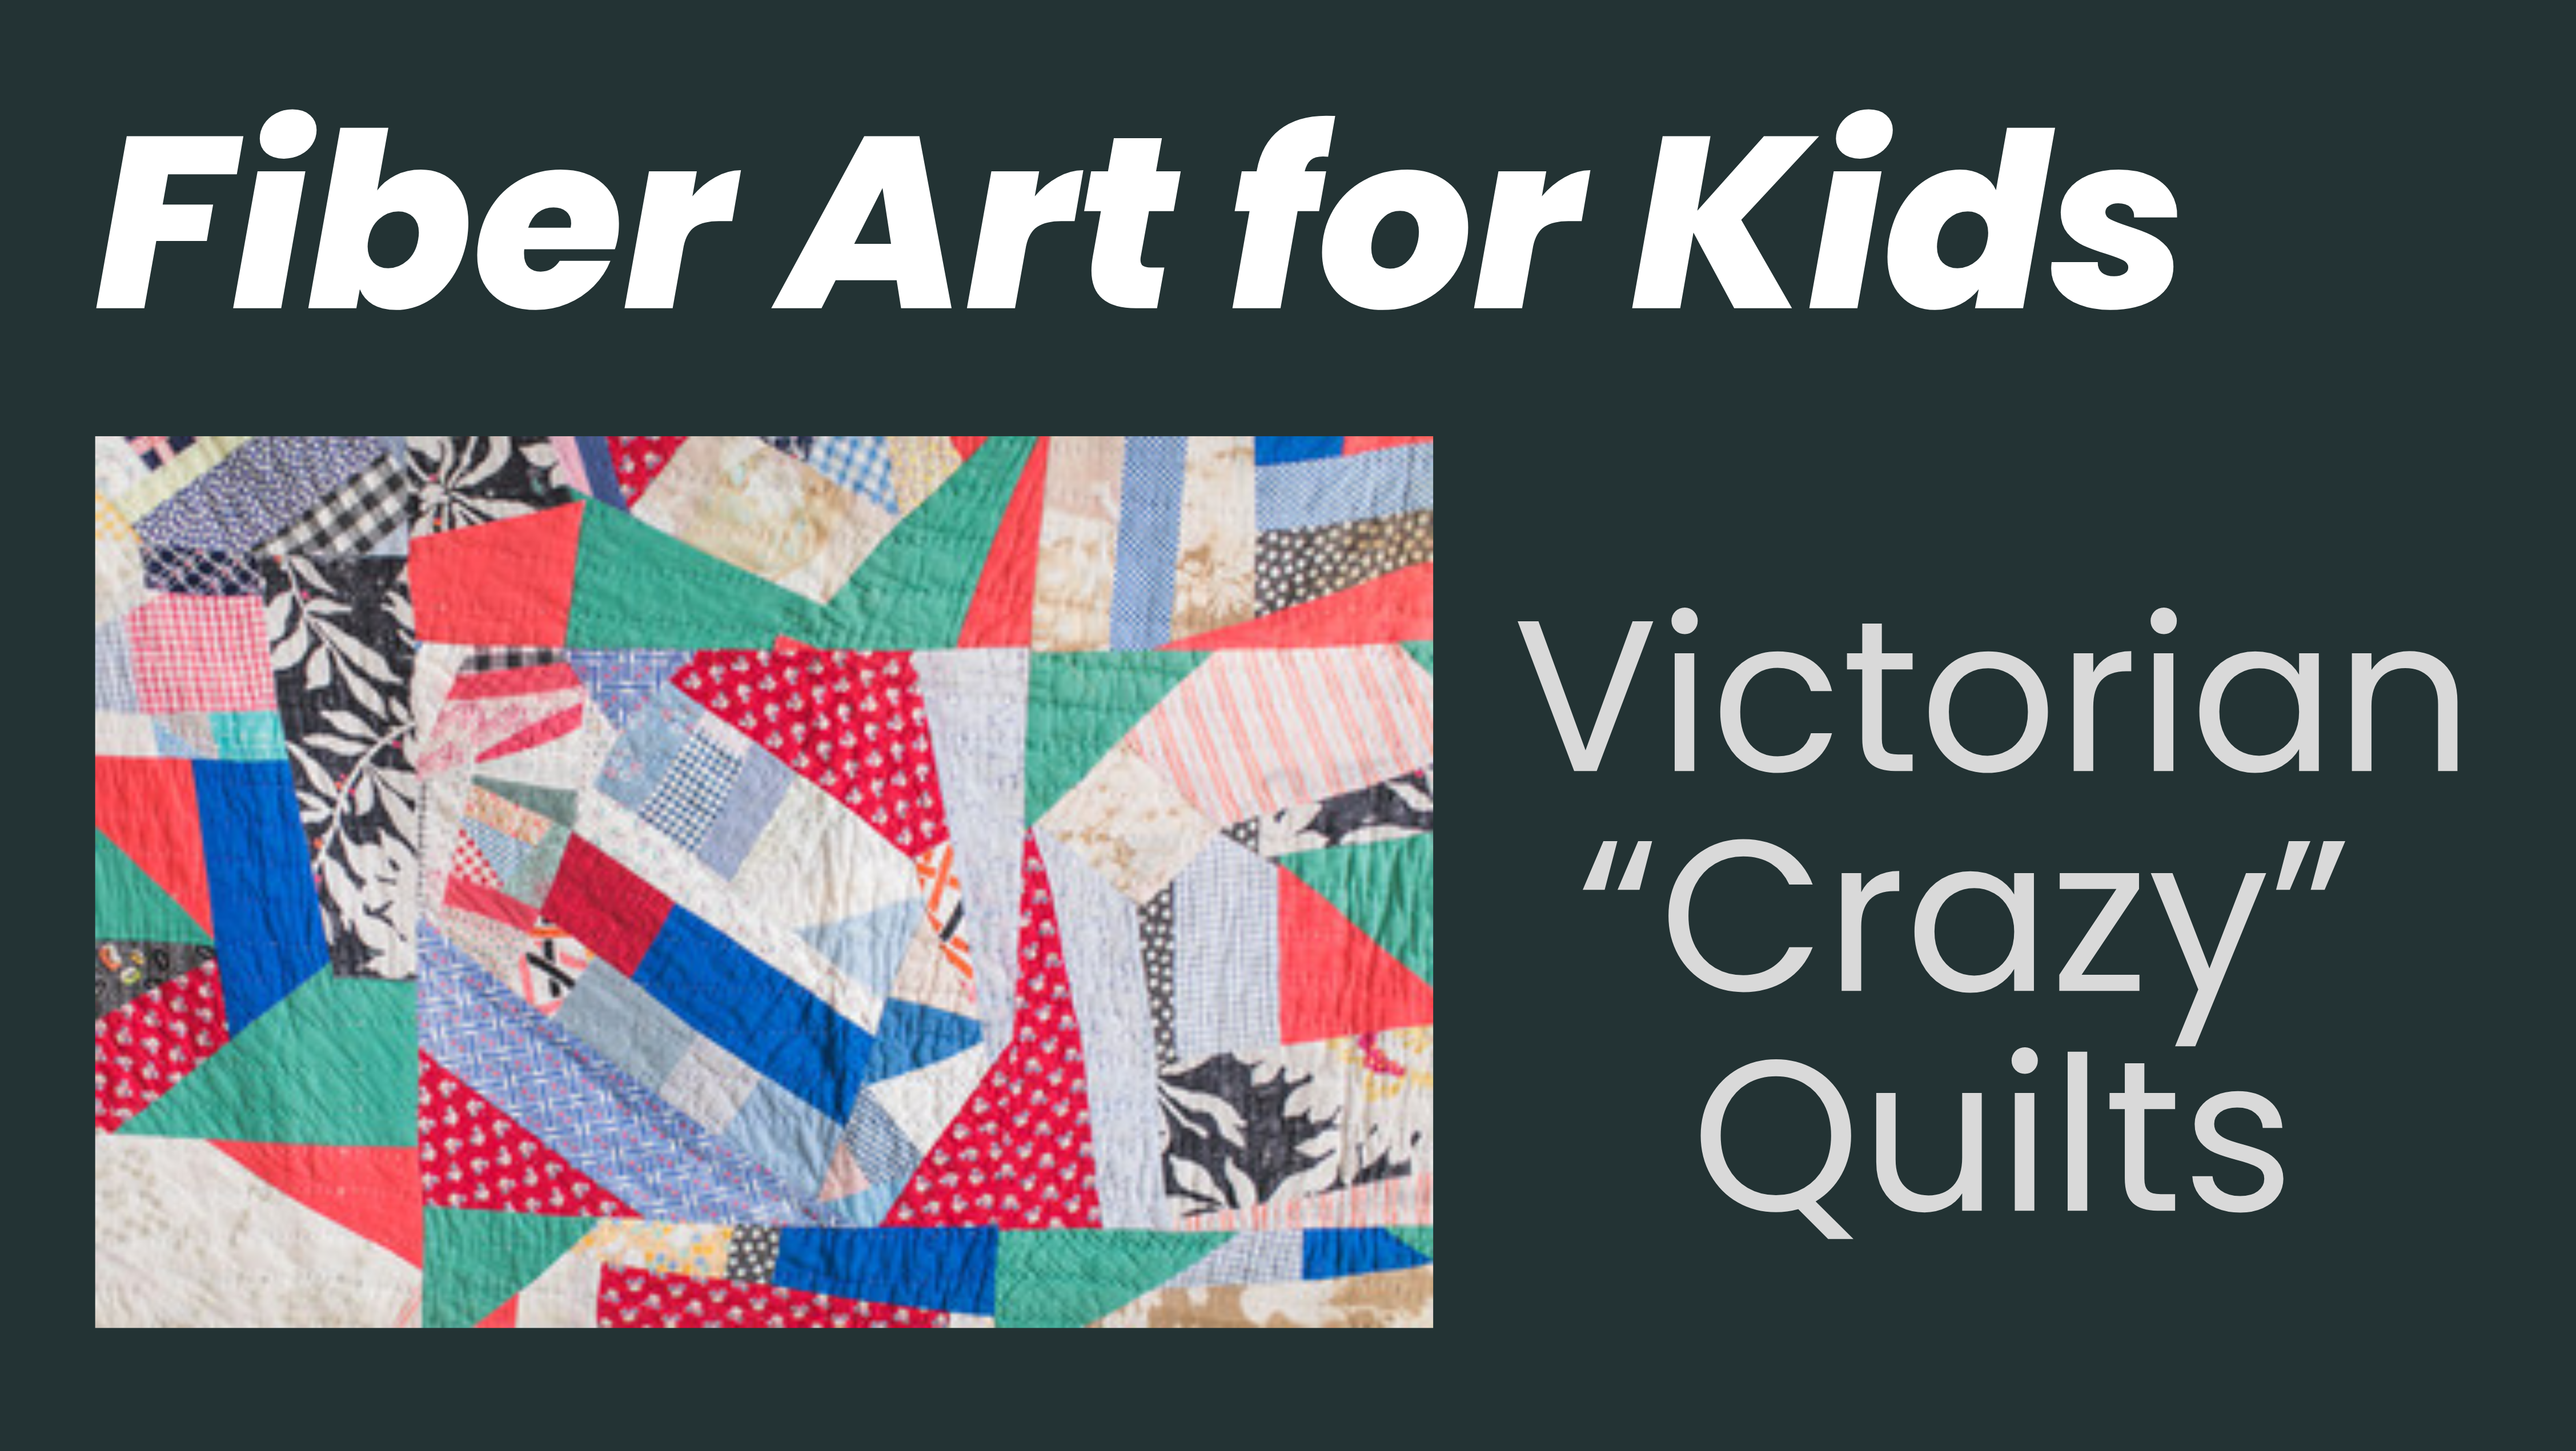 Fiber Arts for Kids: Victorian "Crazy" Quilts